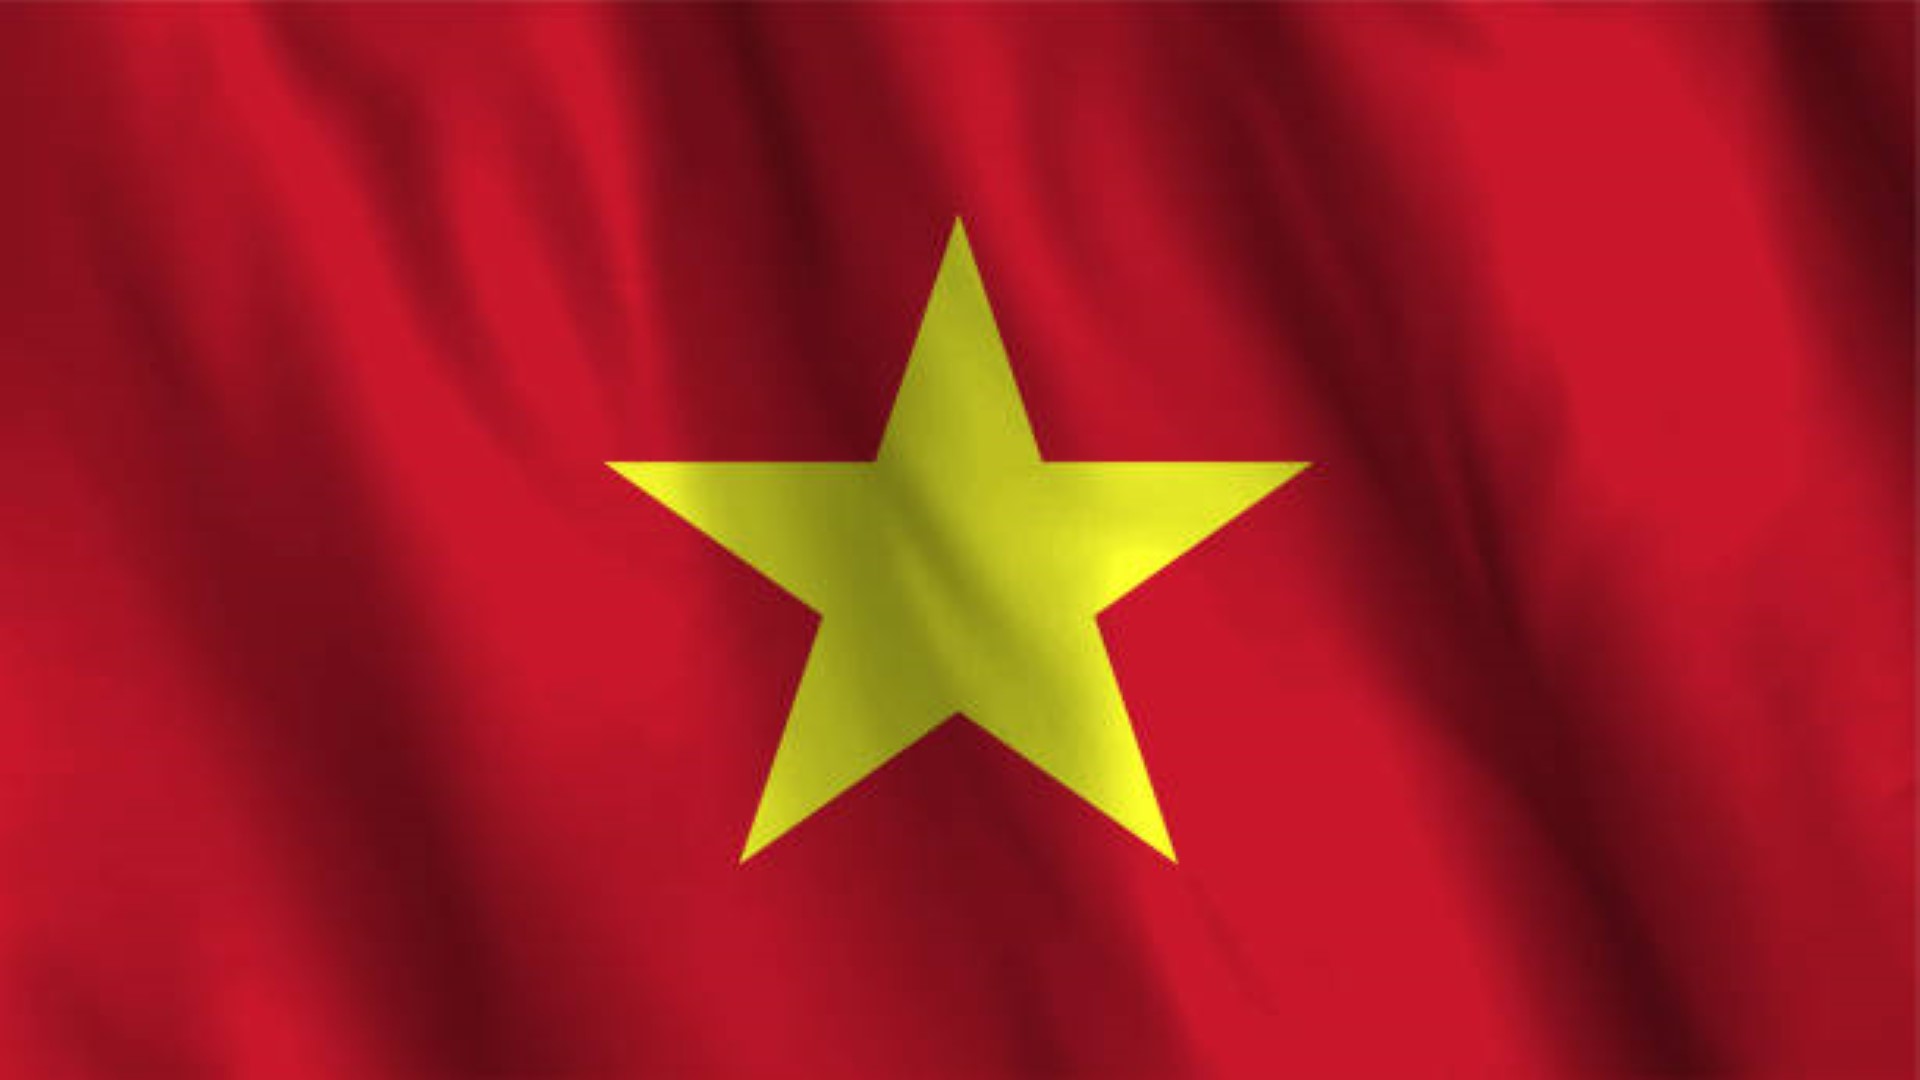 Ứng dụng Tạo hình nền động cờ Việt Nam 3D  Link tải free cách sử dụng